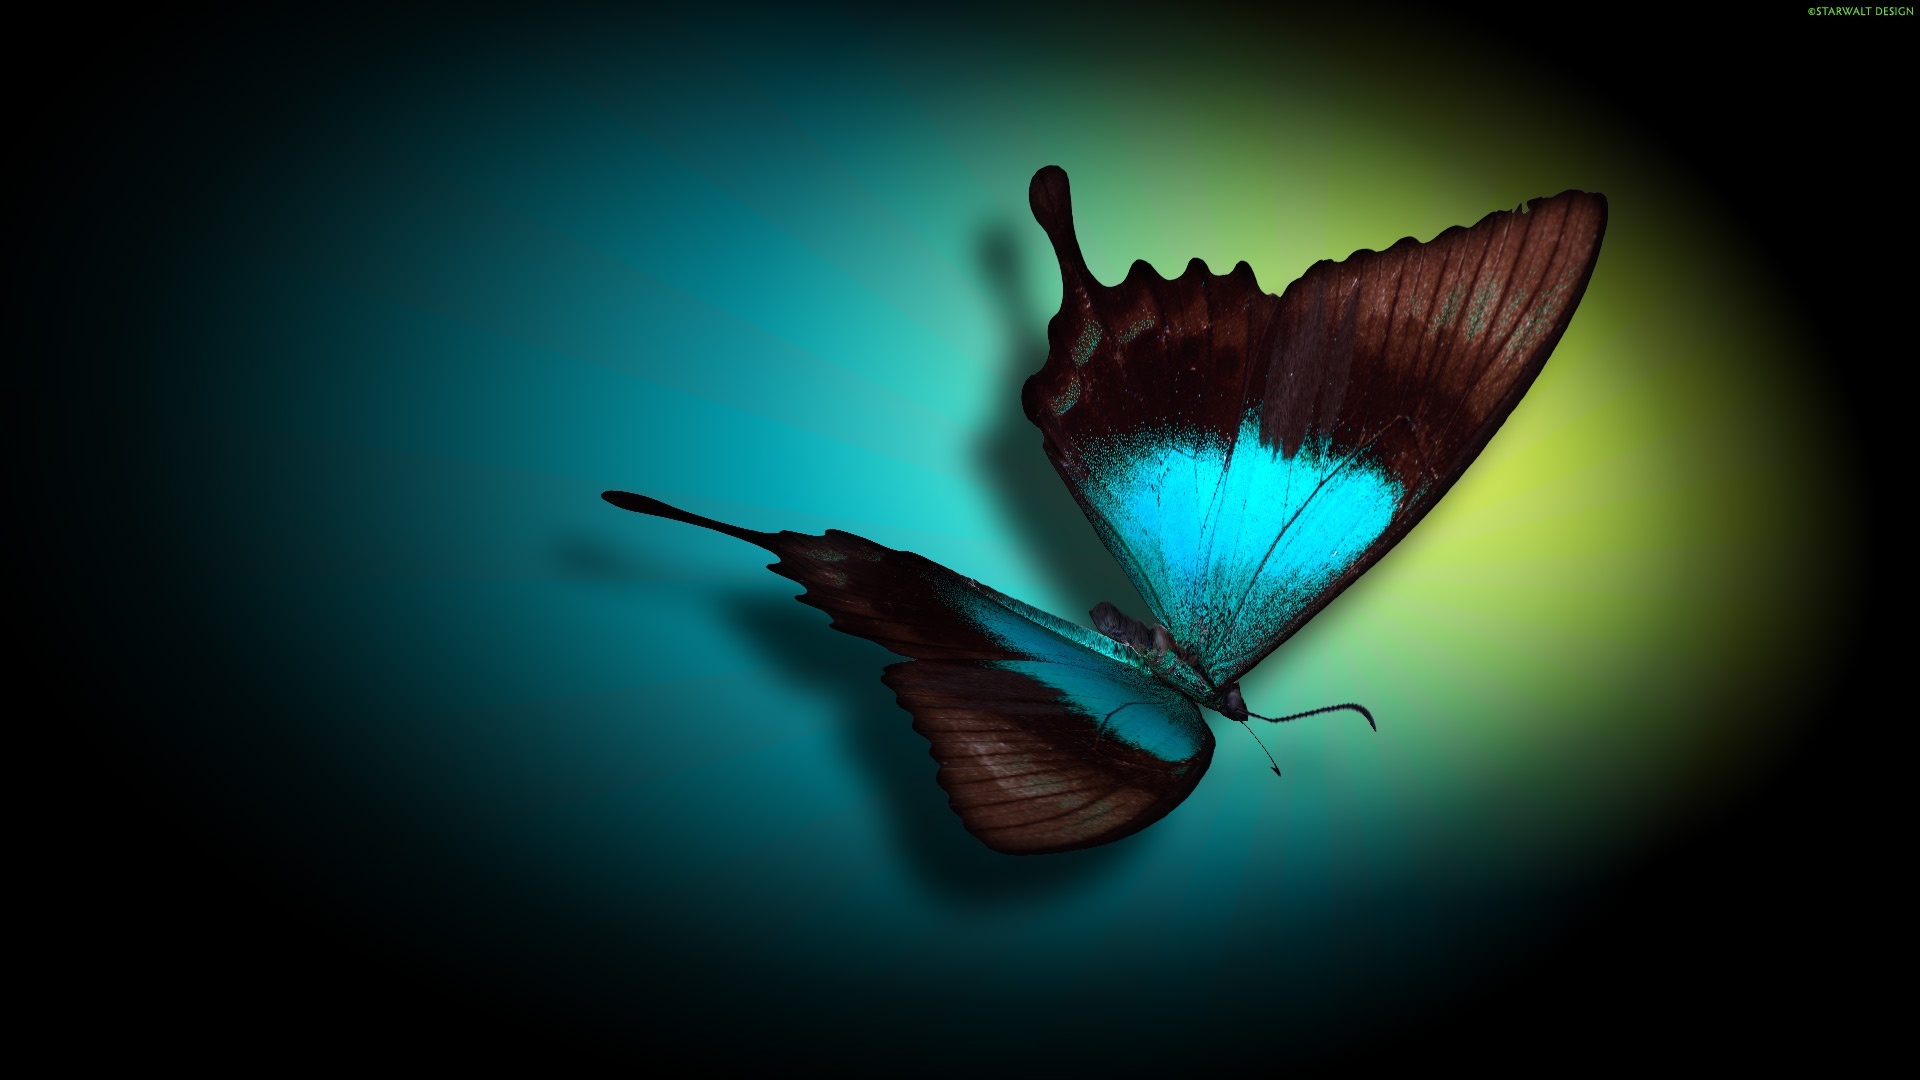 Картинка с бабочкой на аватарку в ВК